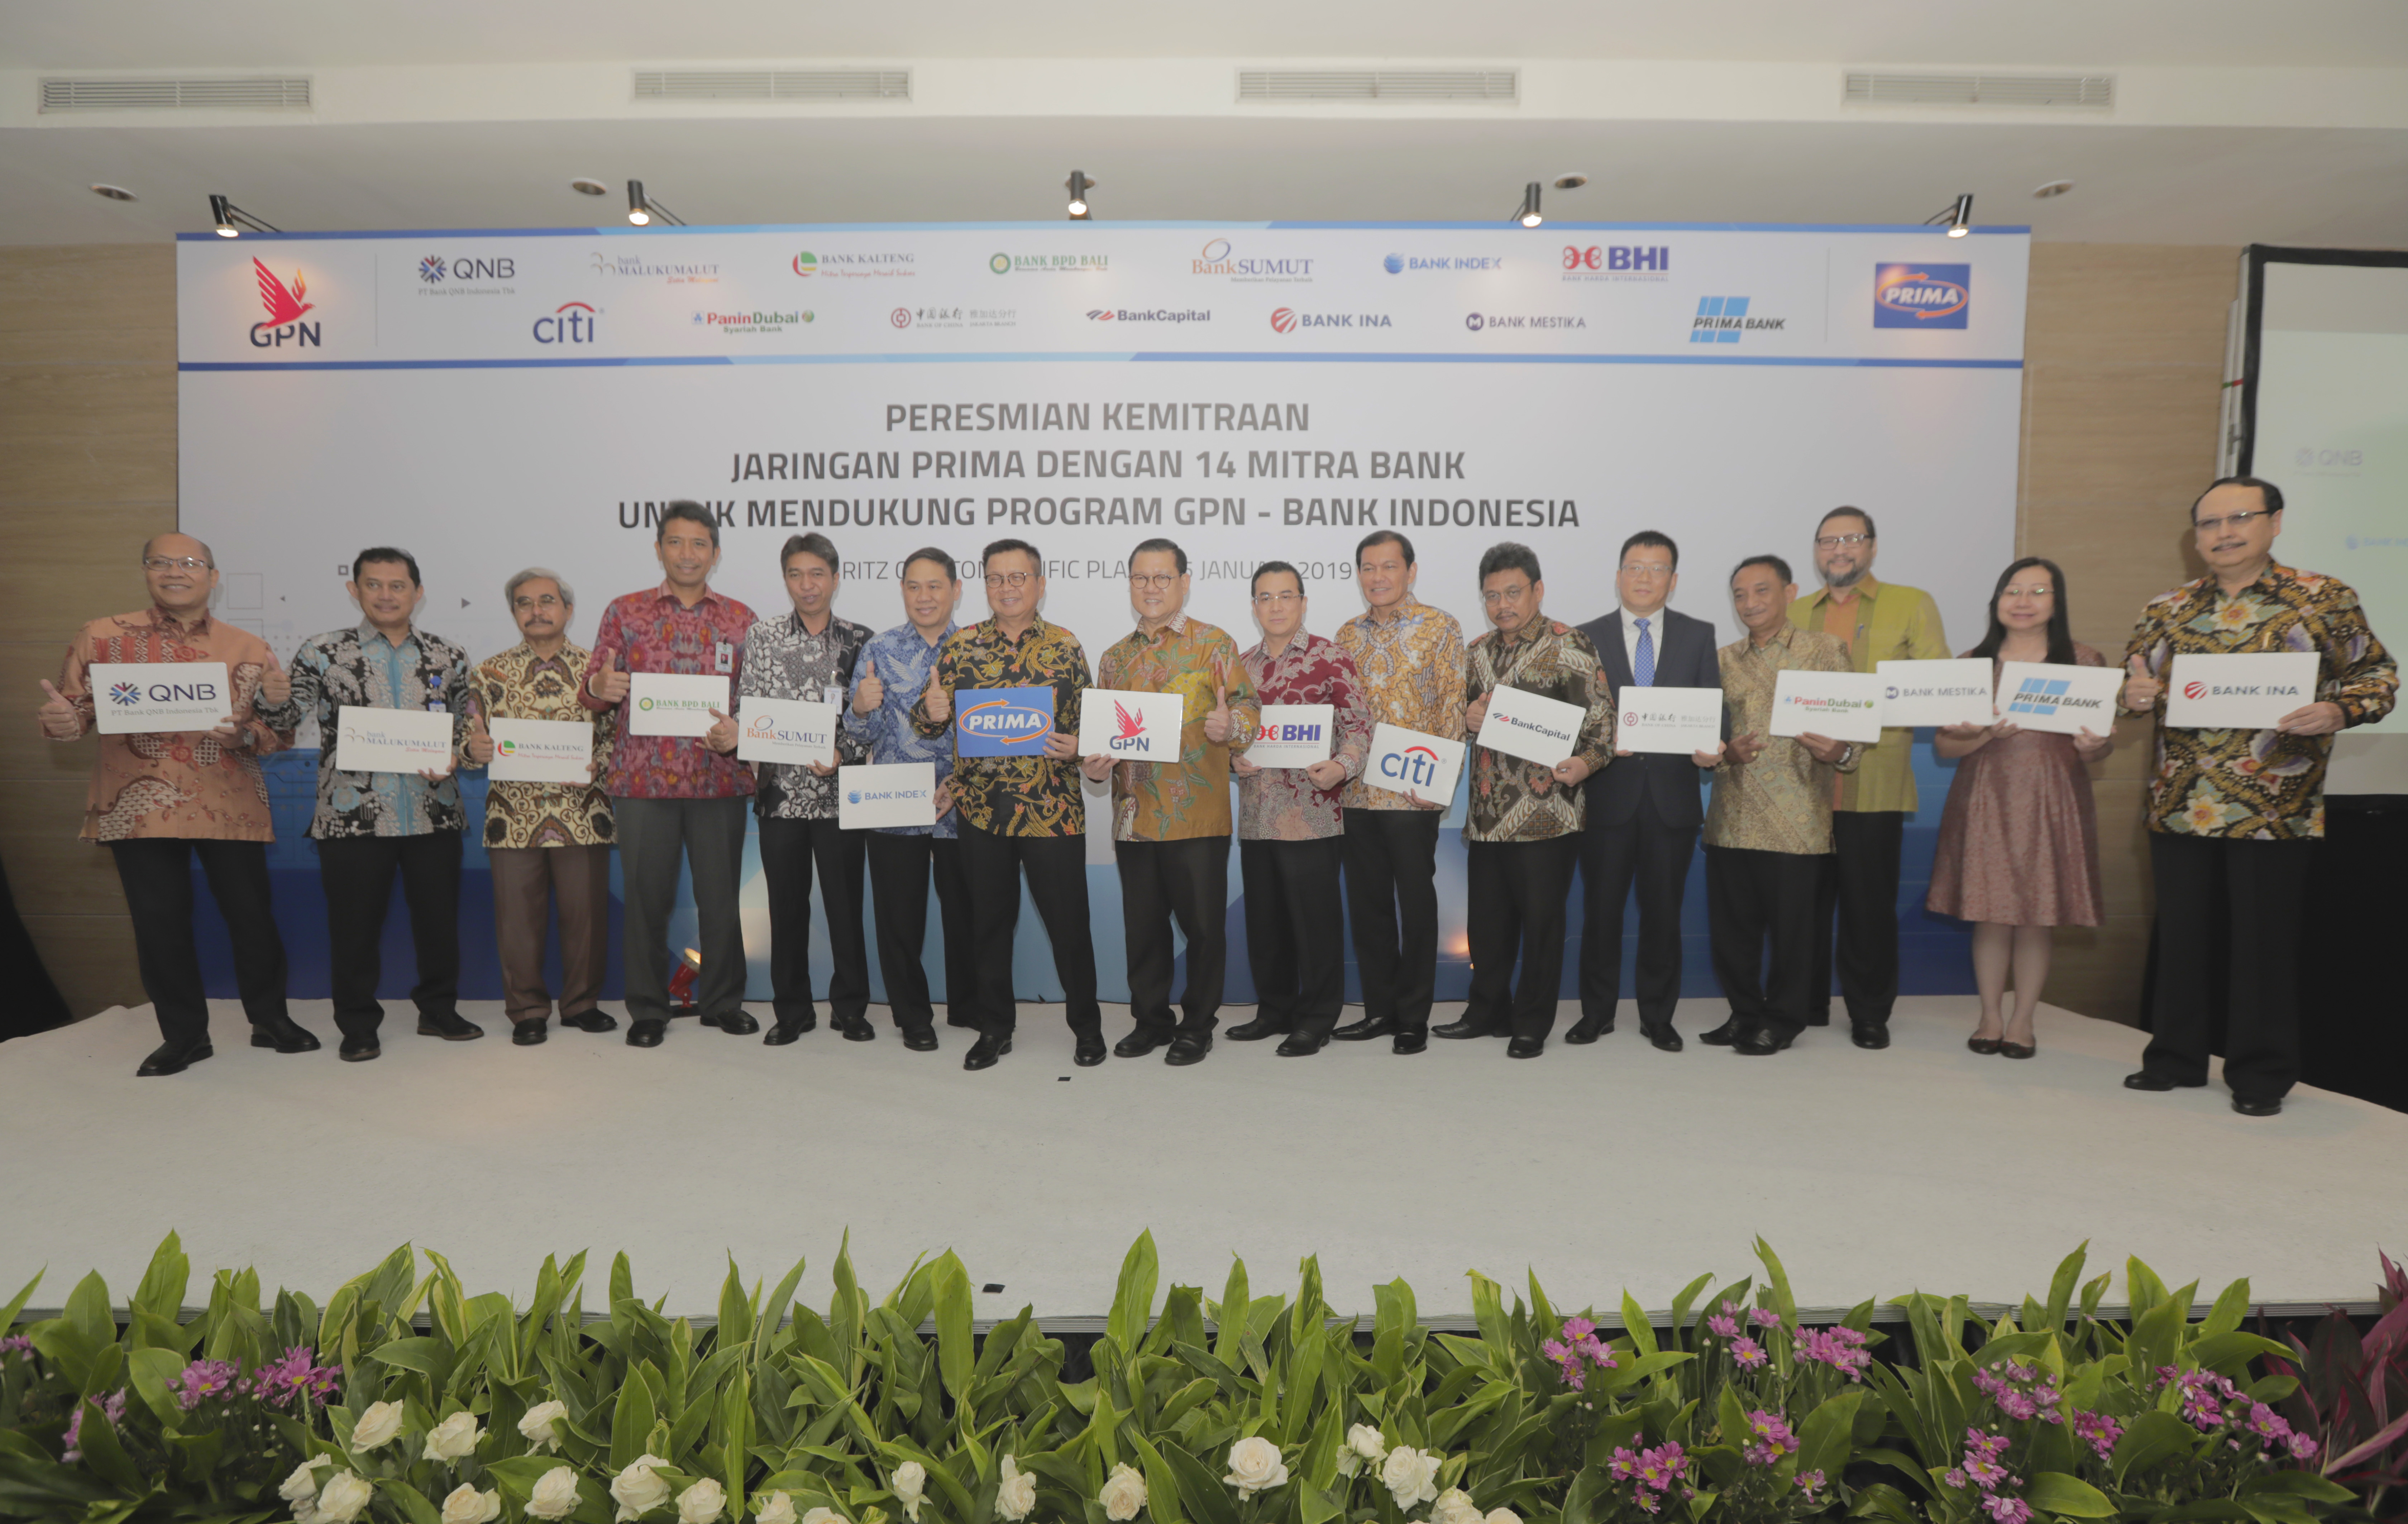 Peresmian Kemitraan Jaringan PRIMA dengan14 Mitra Bank untuk mendukung program GPN – BANK INDONESIA